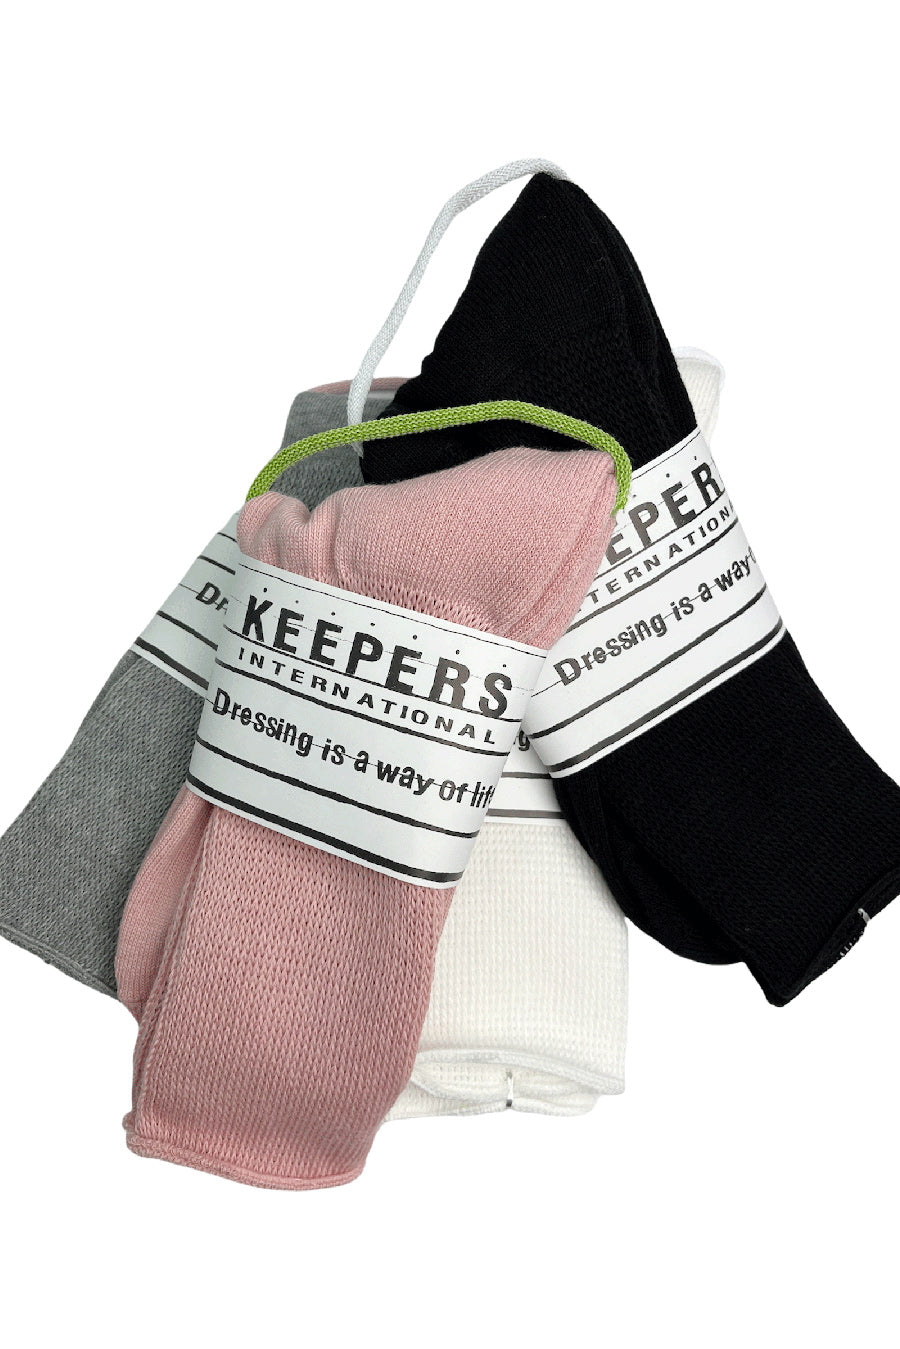 KEEPERS キーパース ノンタイトニングソックス 靴下 ソックス SOCKS レギュラー丈 糖尿患者 妊婦さん 足むくみ 締め付けない 日本製 メンズ レディース アメカジ キャンプ アウトドア